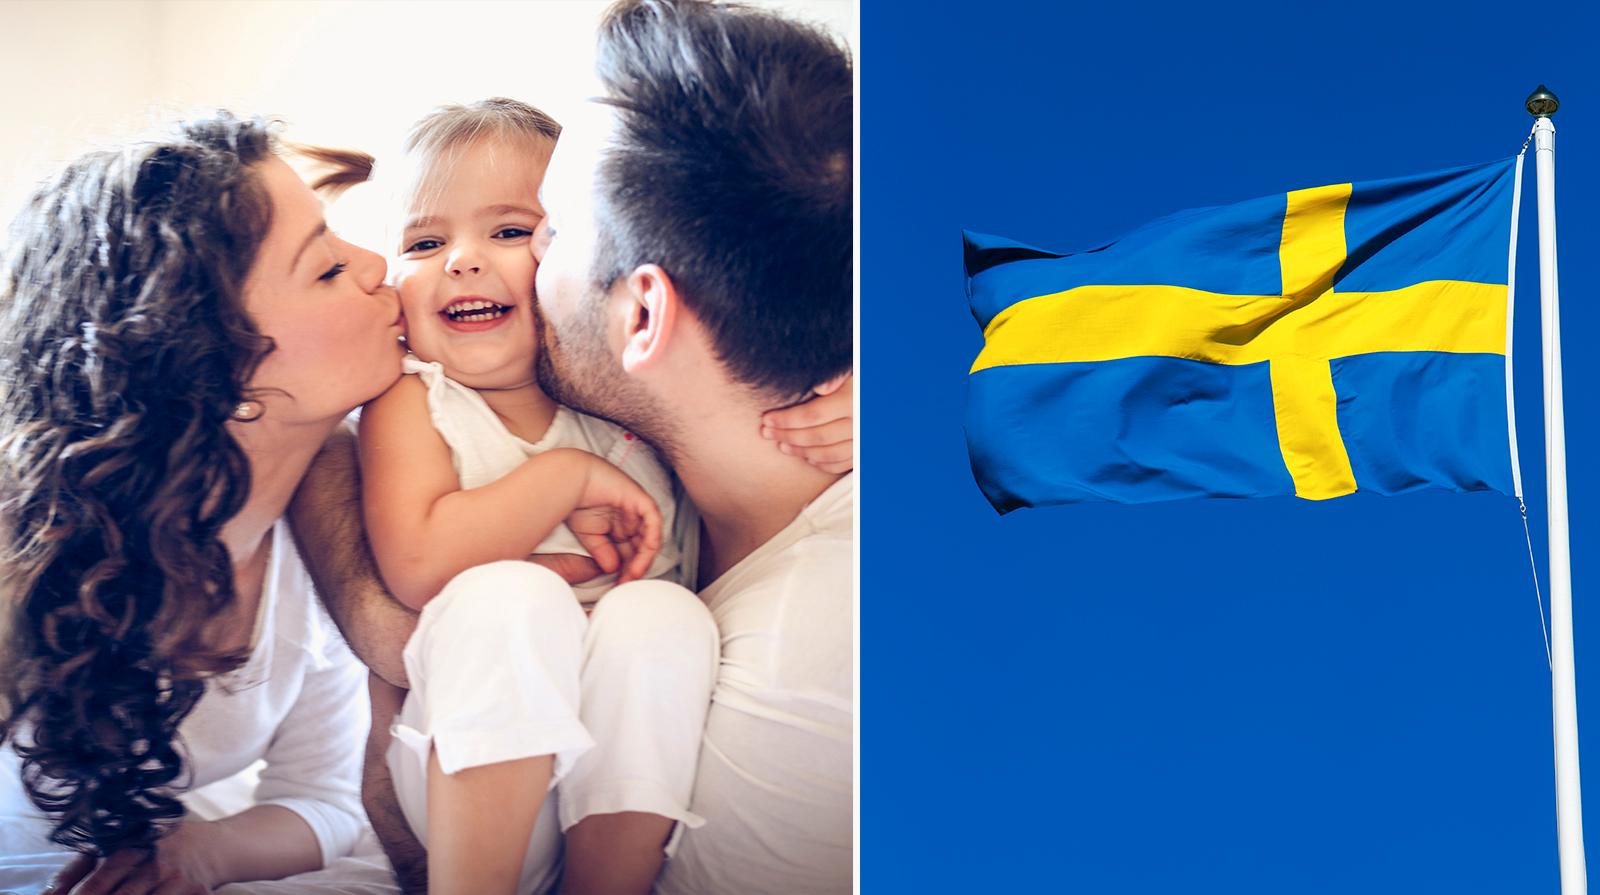 Sverige är ett av de bättre länderna att ha barn i.